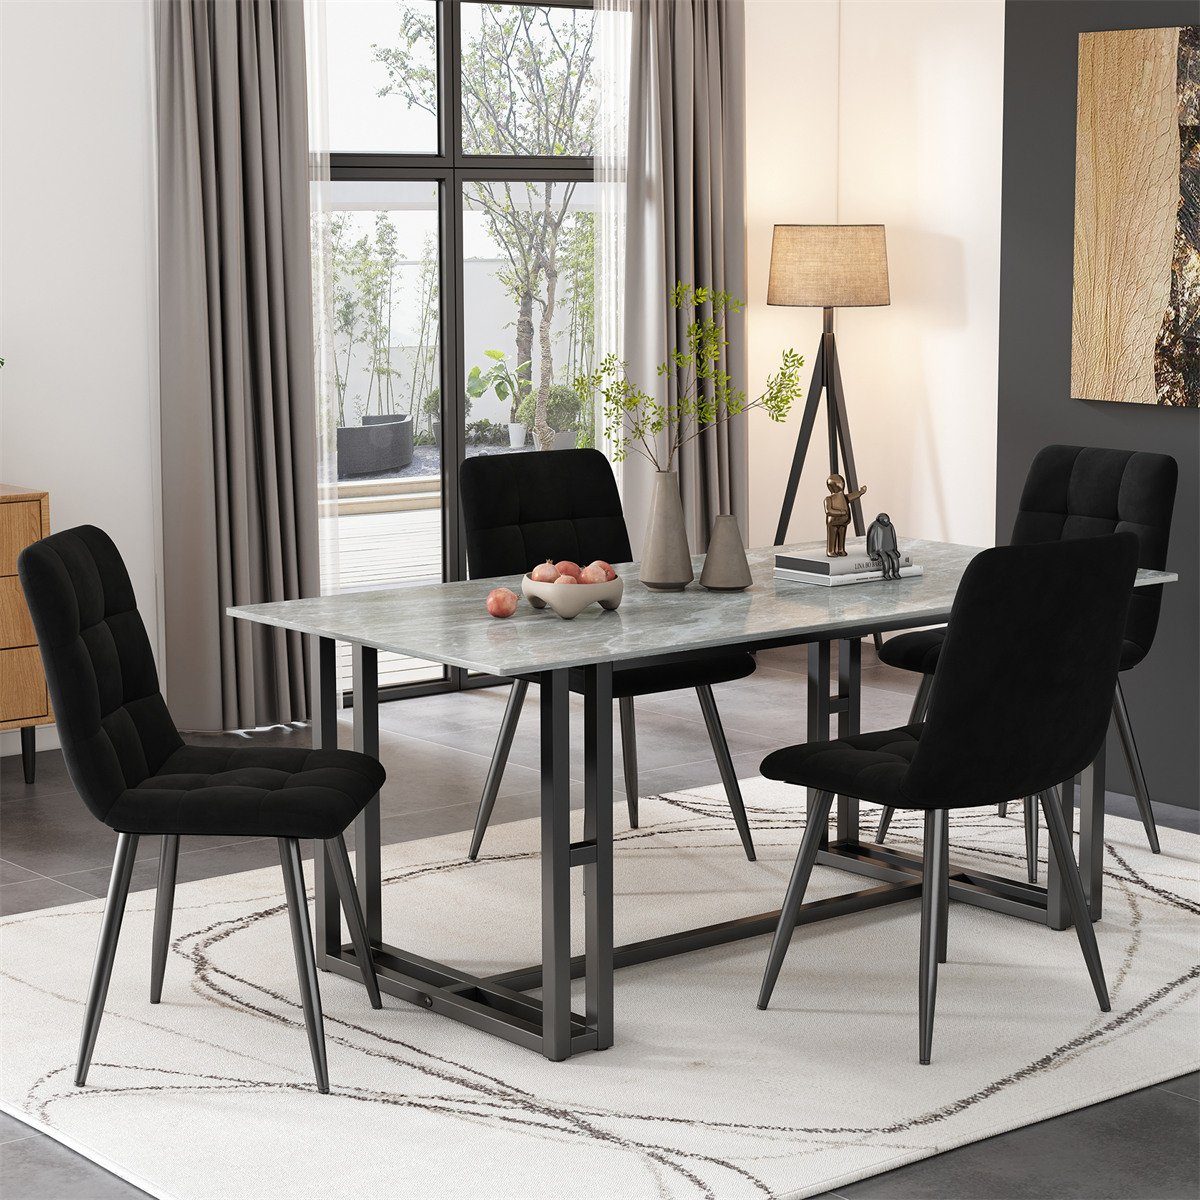 XDeer Esszimmerstuhl 4er Set Esszimmerstühle,Polsterstuhl Sitzfläche Rückenlehne, Küchenstuhl Gestell aus Samt zu mit Schwarz aus Metall,Leicht montieren